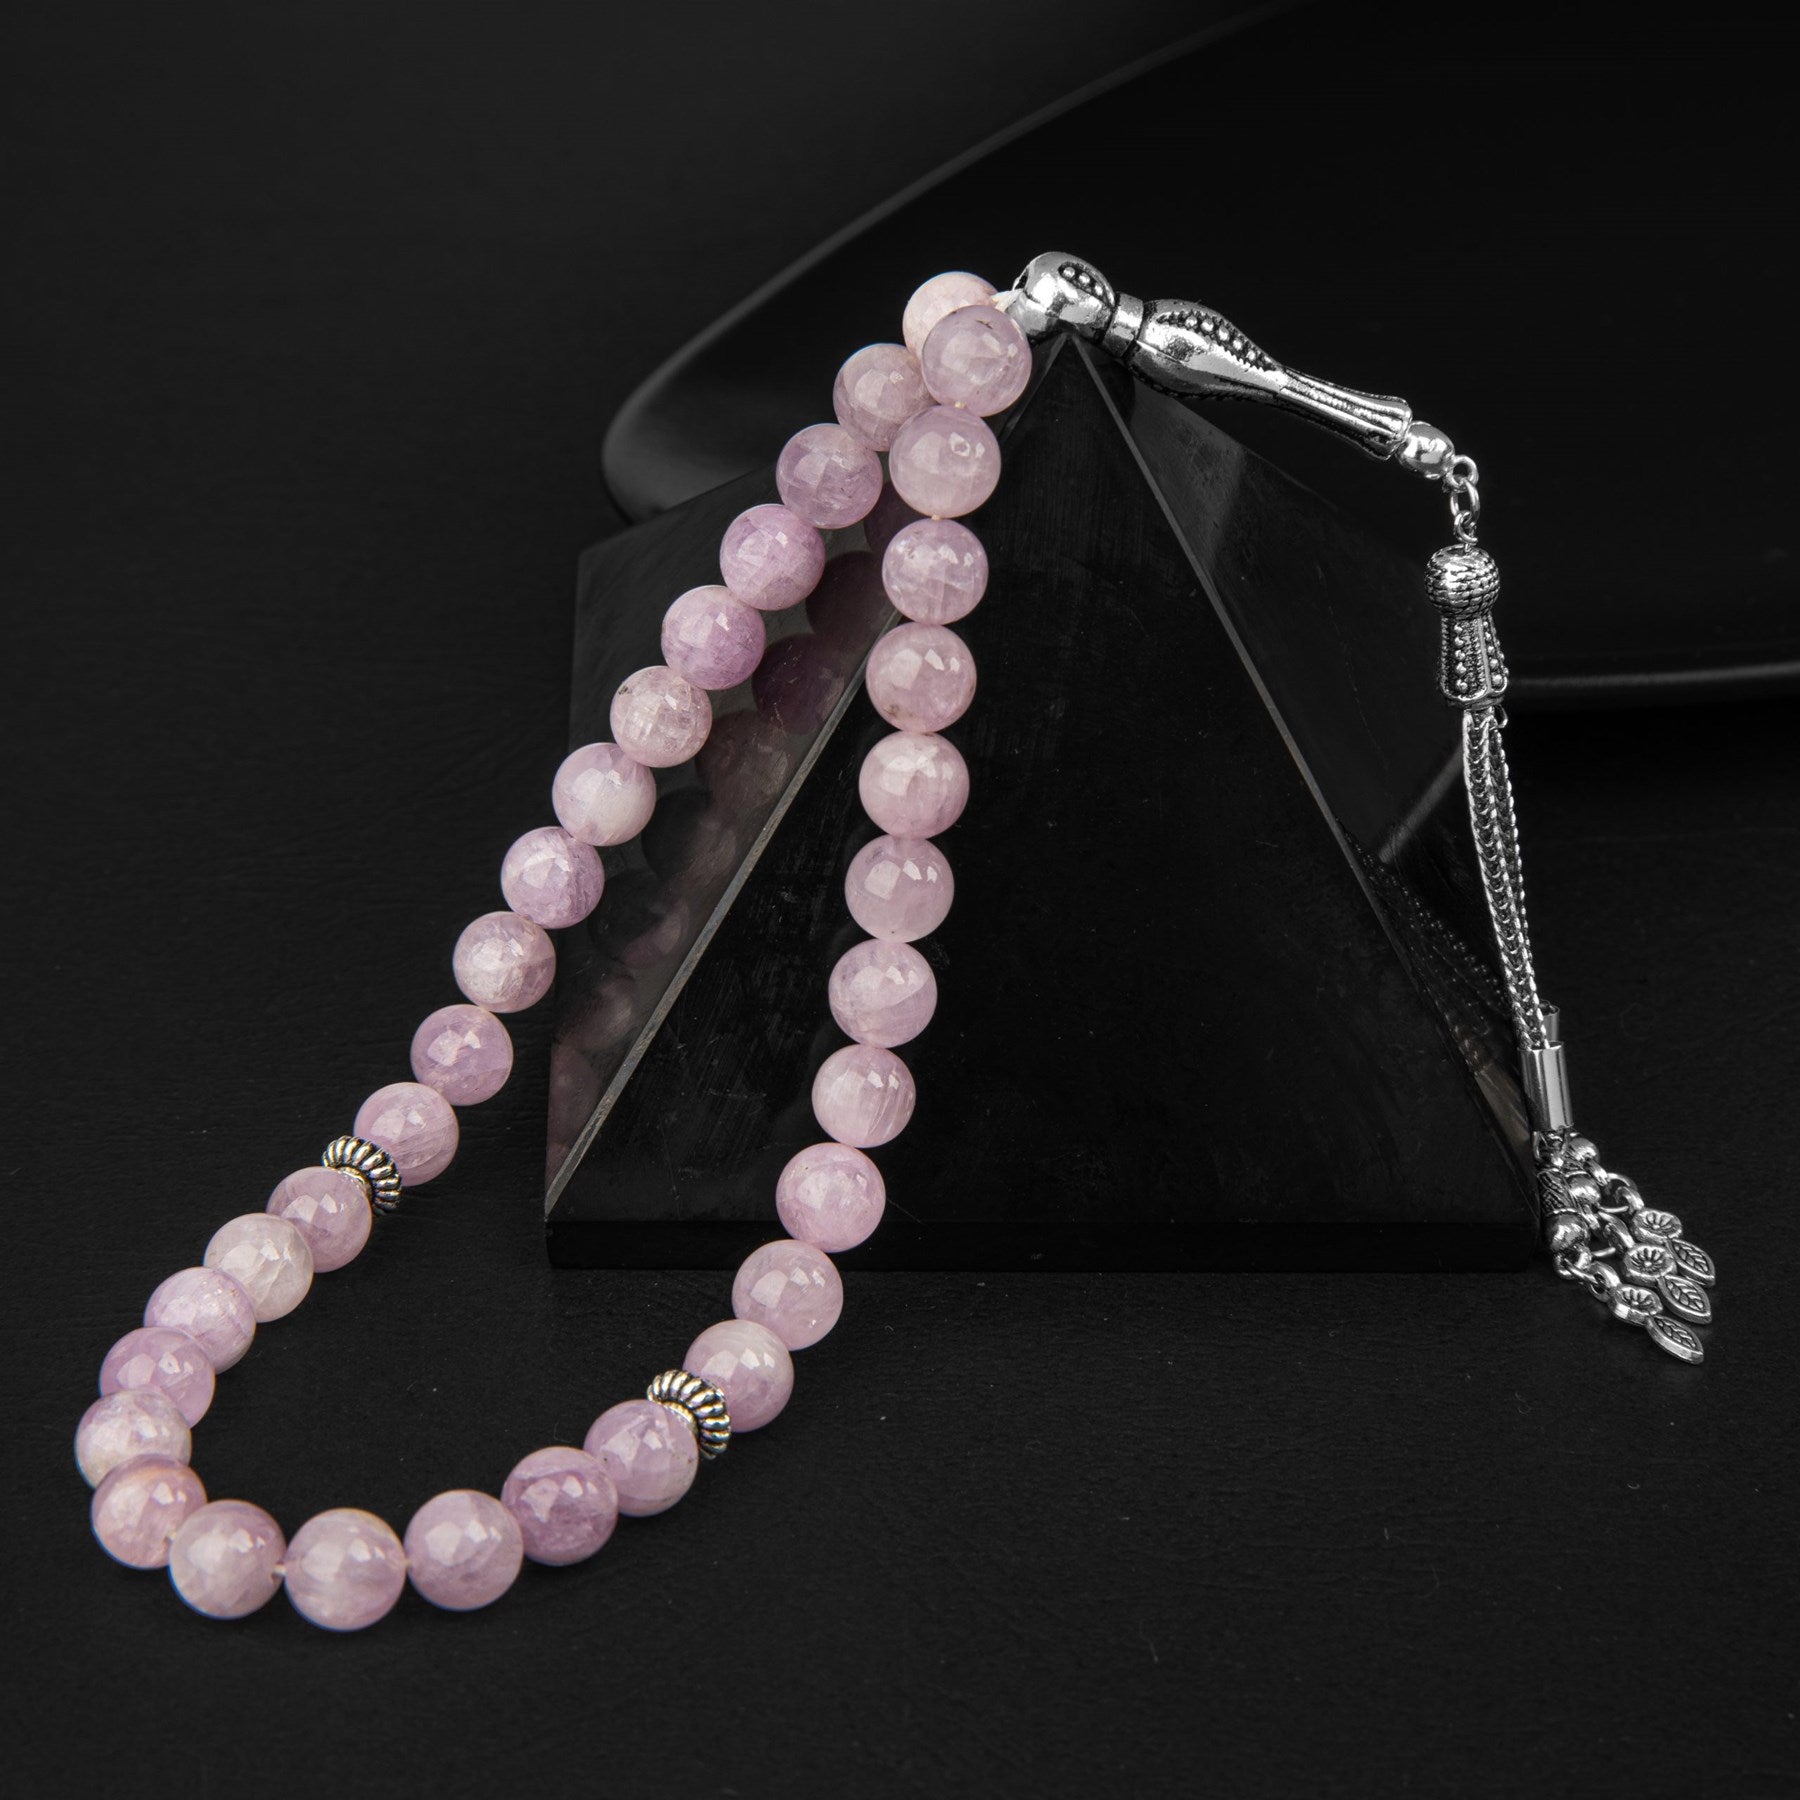 Kunzite Gemstone Prayer Beads - 8mm / 33pc